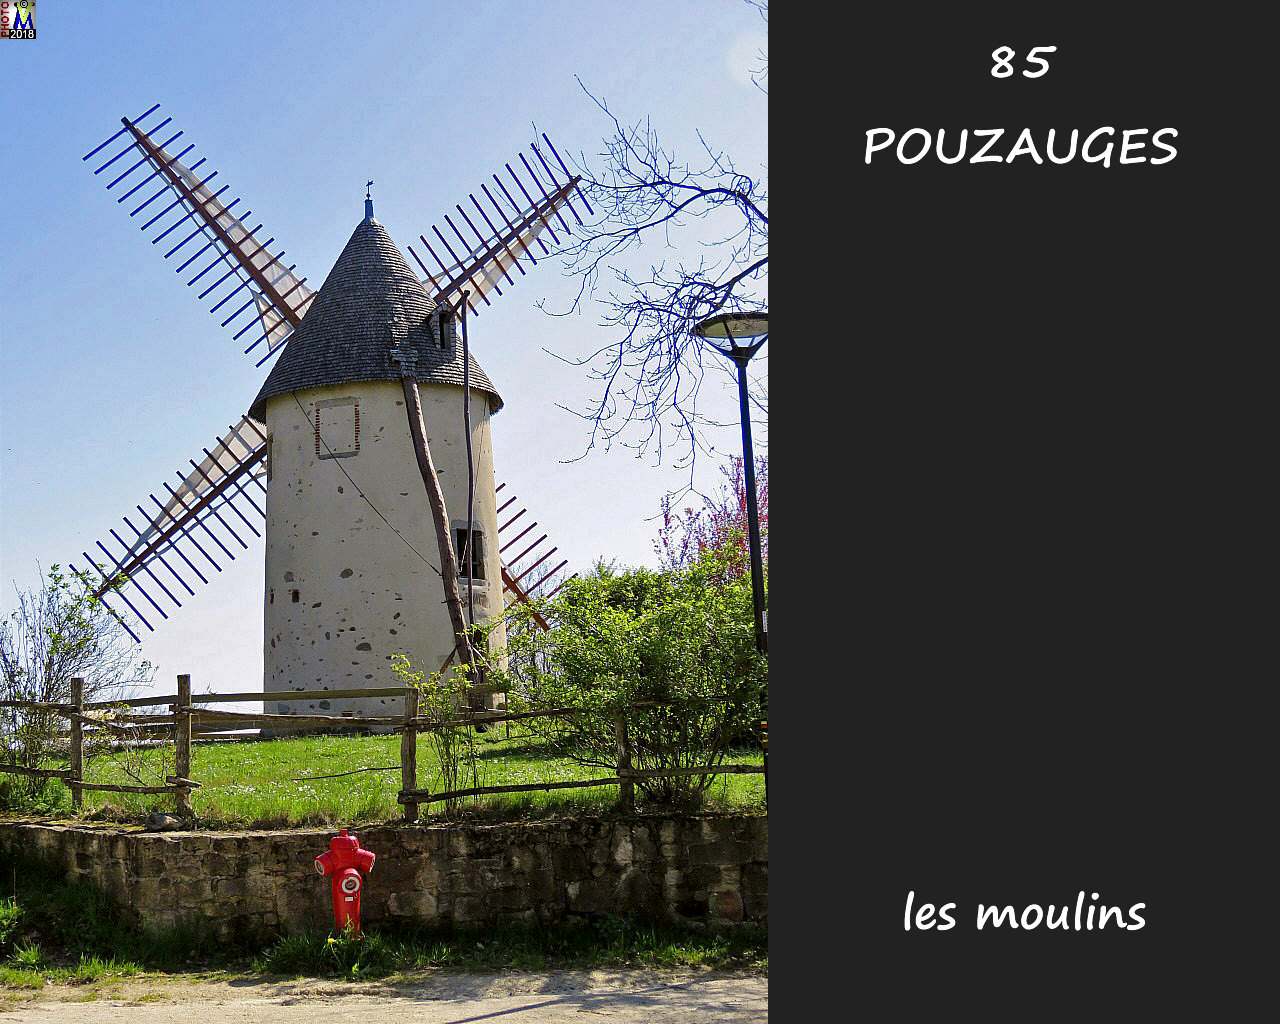 85POUZAUGES_moulins_1004.jpg